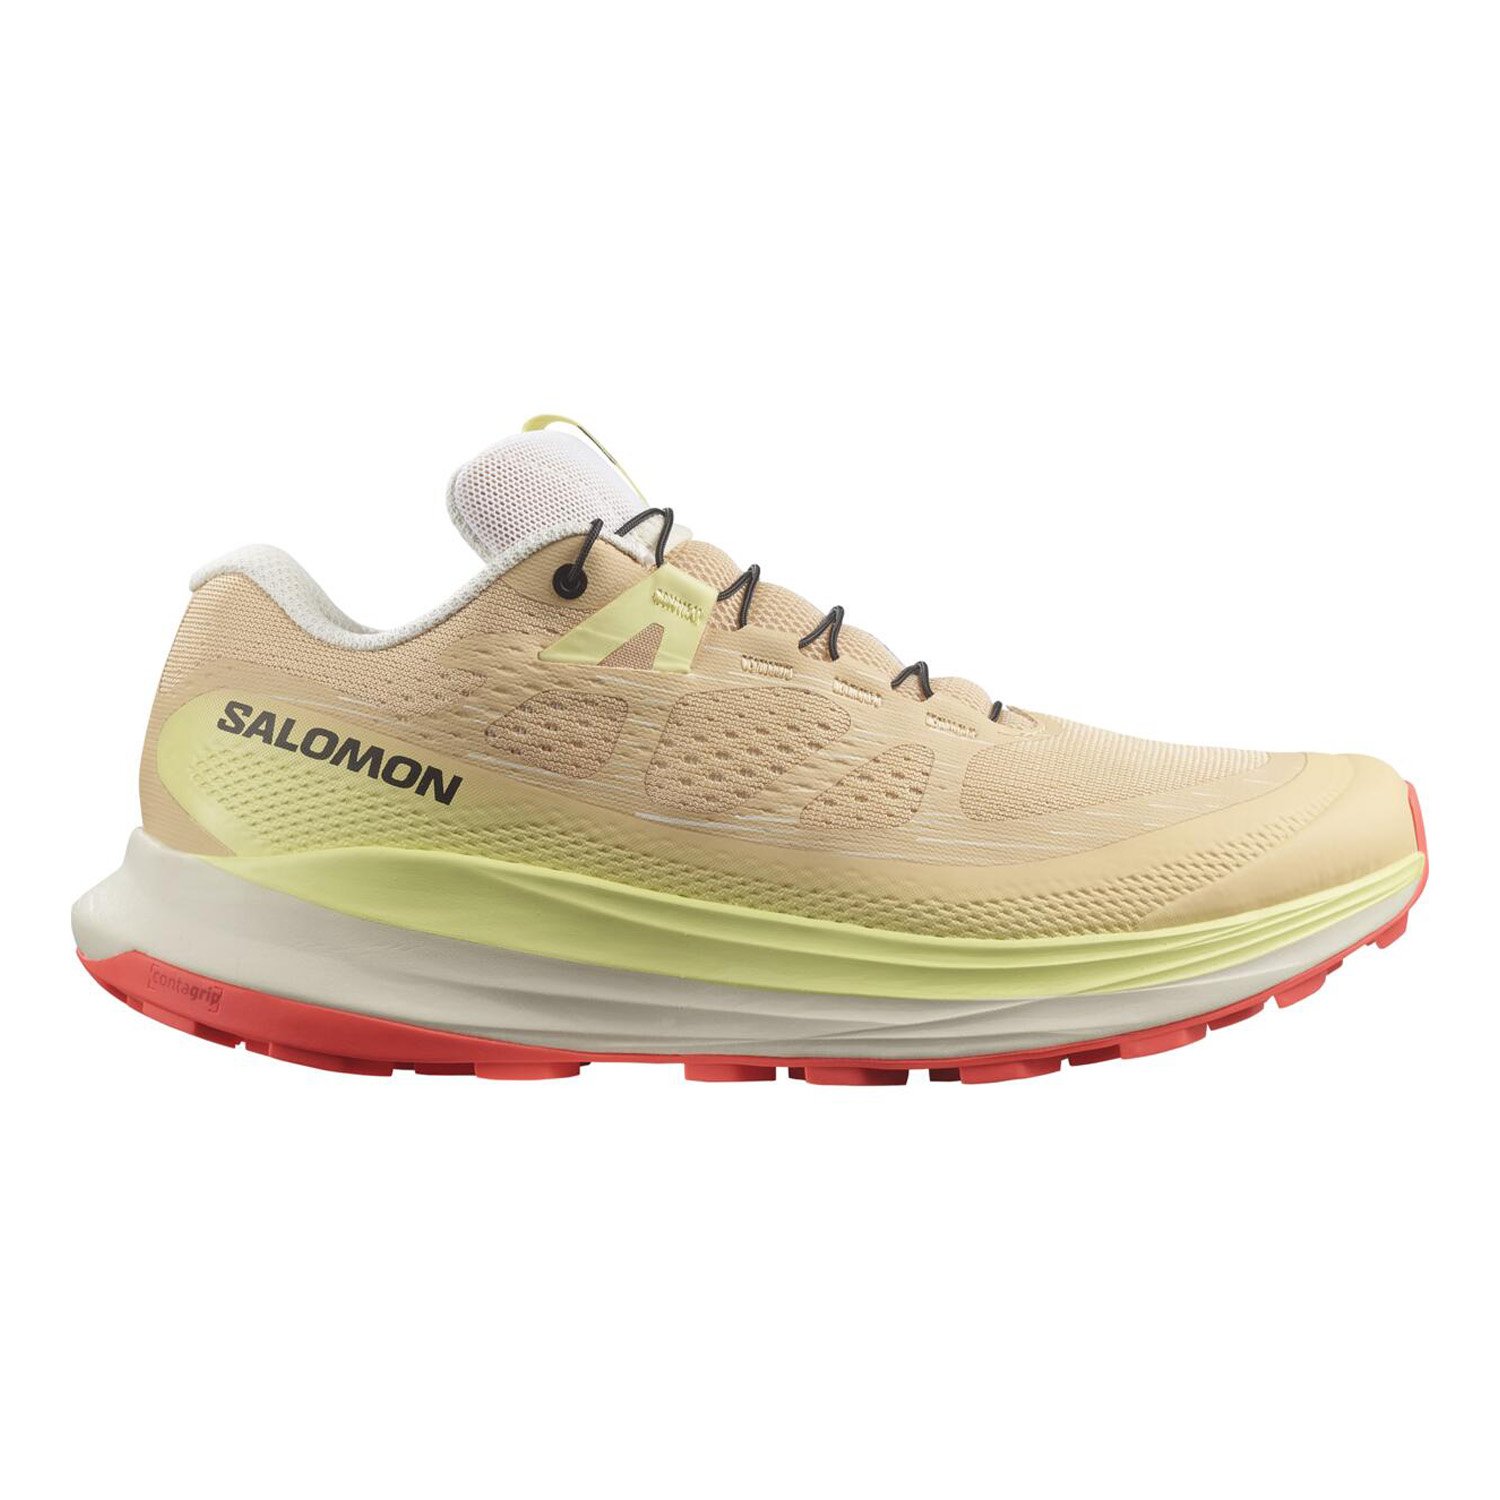 Salomon Ultra Glide 2 Kadın Patika Koşu Ayakkabısı - Renkli - 1